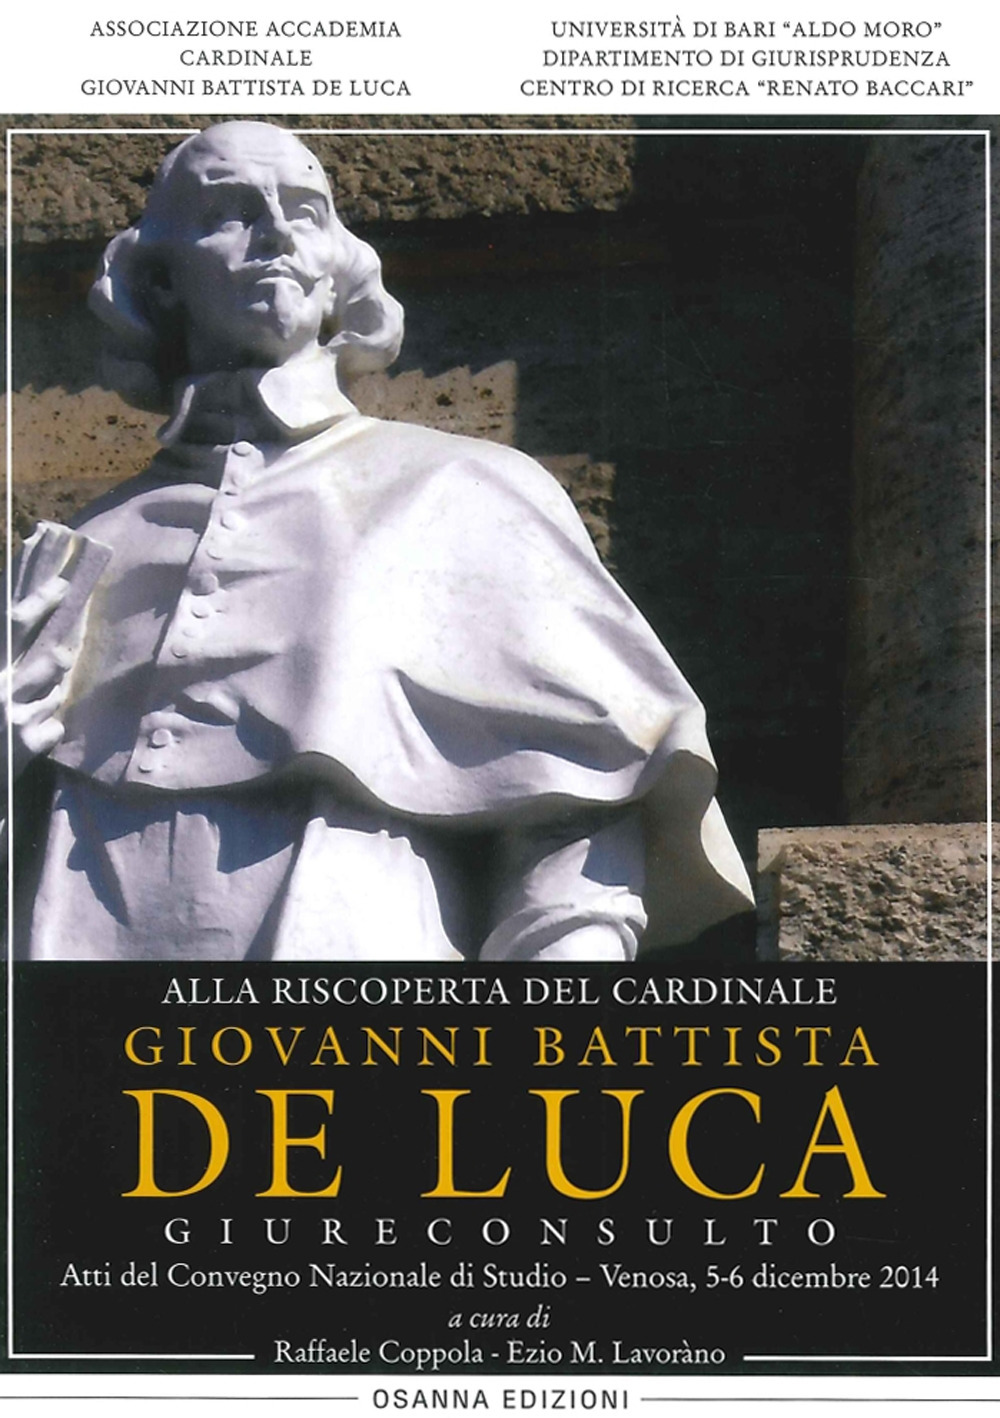 Alla riscoperta del cardinale Giovanni Battista De Luca, Giureconsulto. Atti del Convegno nazionale di studio (Venosa, 5-6 dicembre 2014)